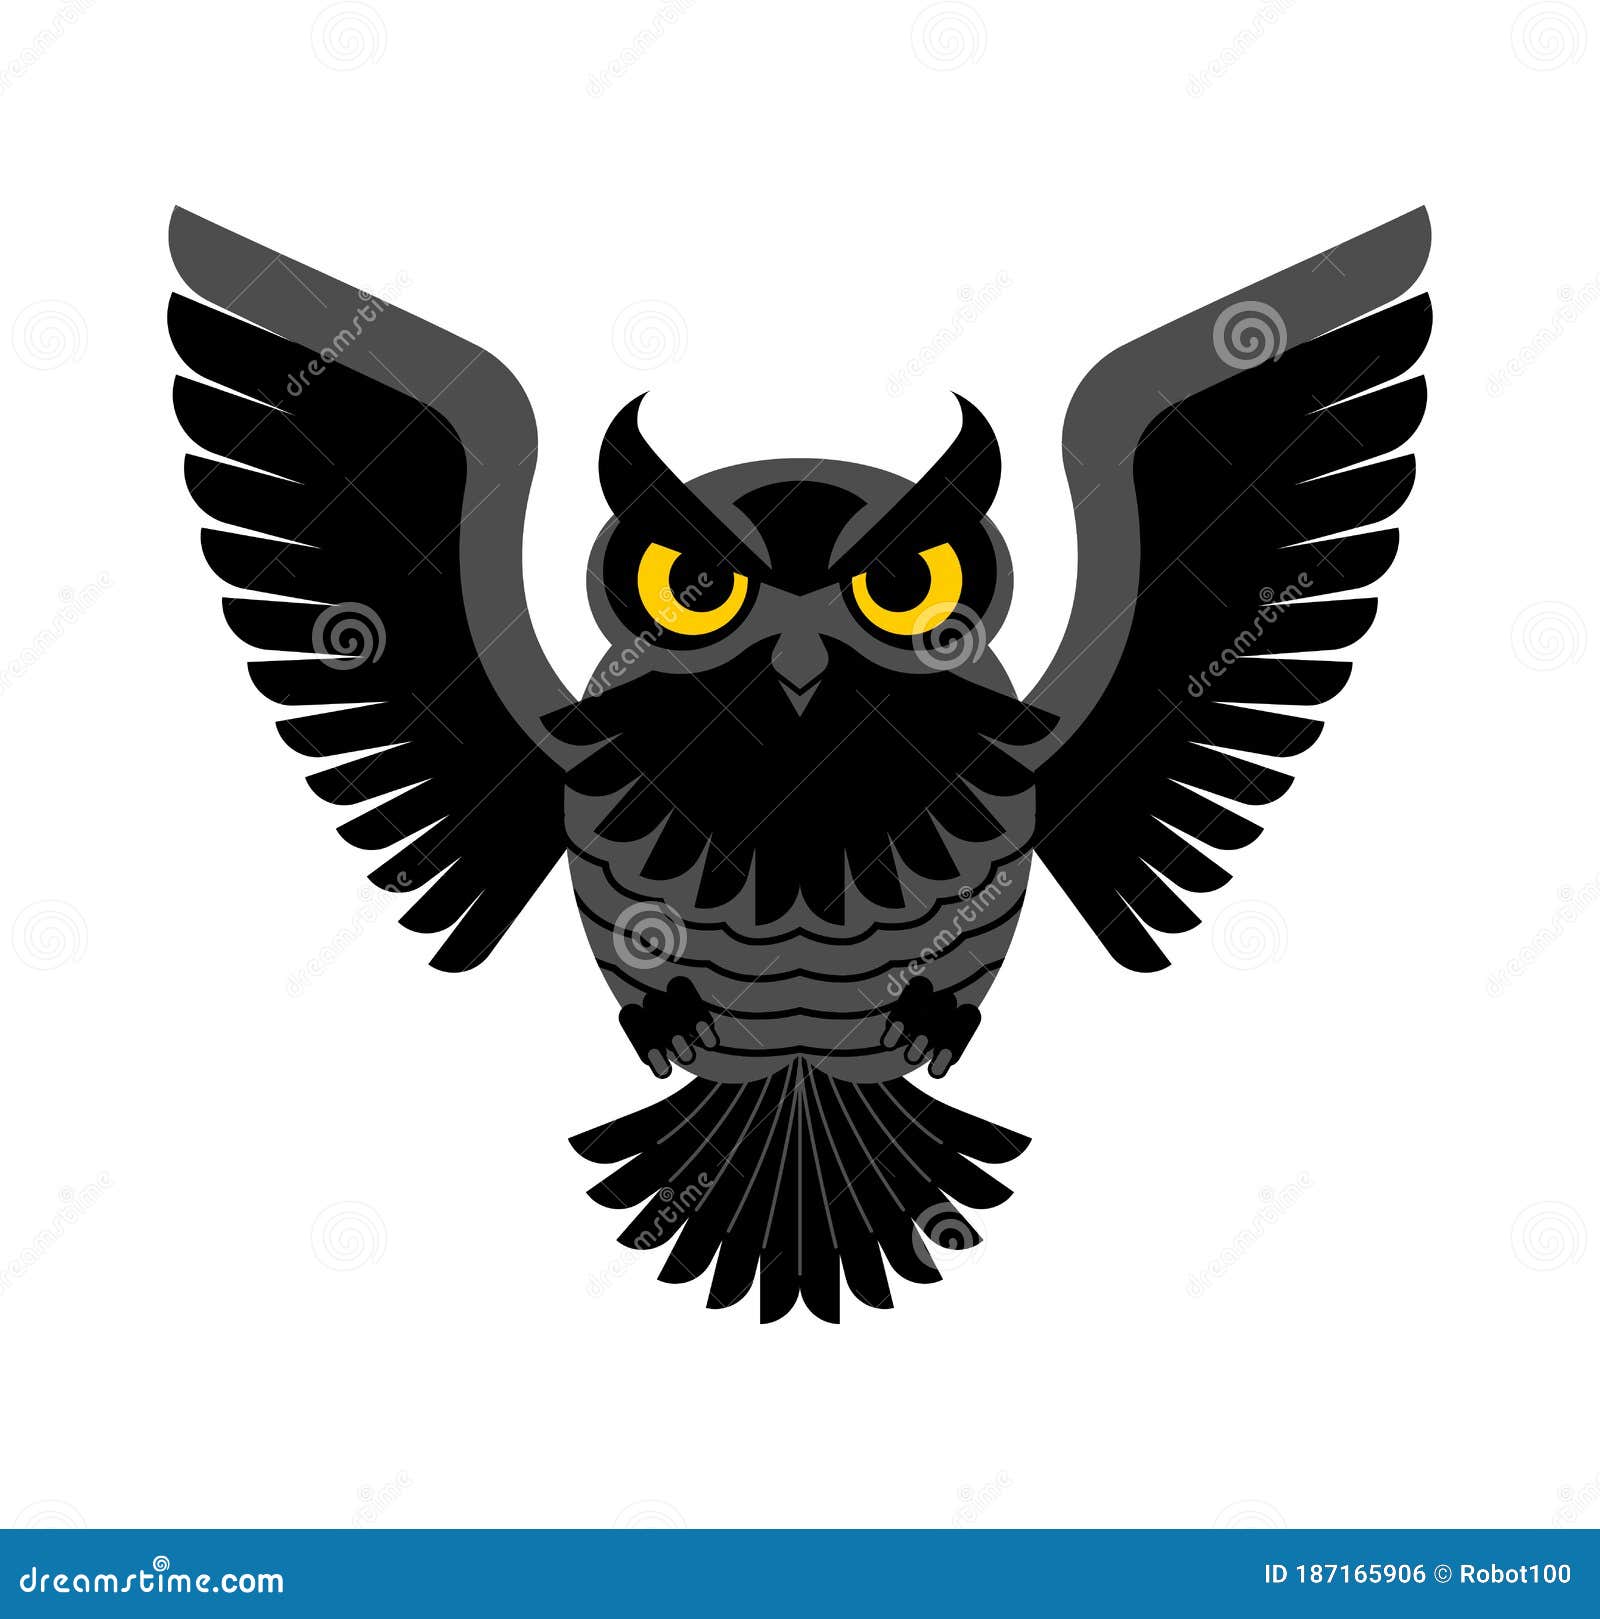 owl . eagle-owl bird icon.  